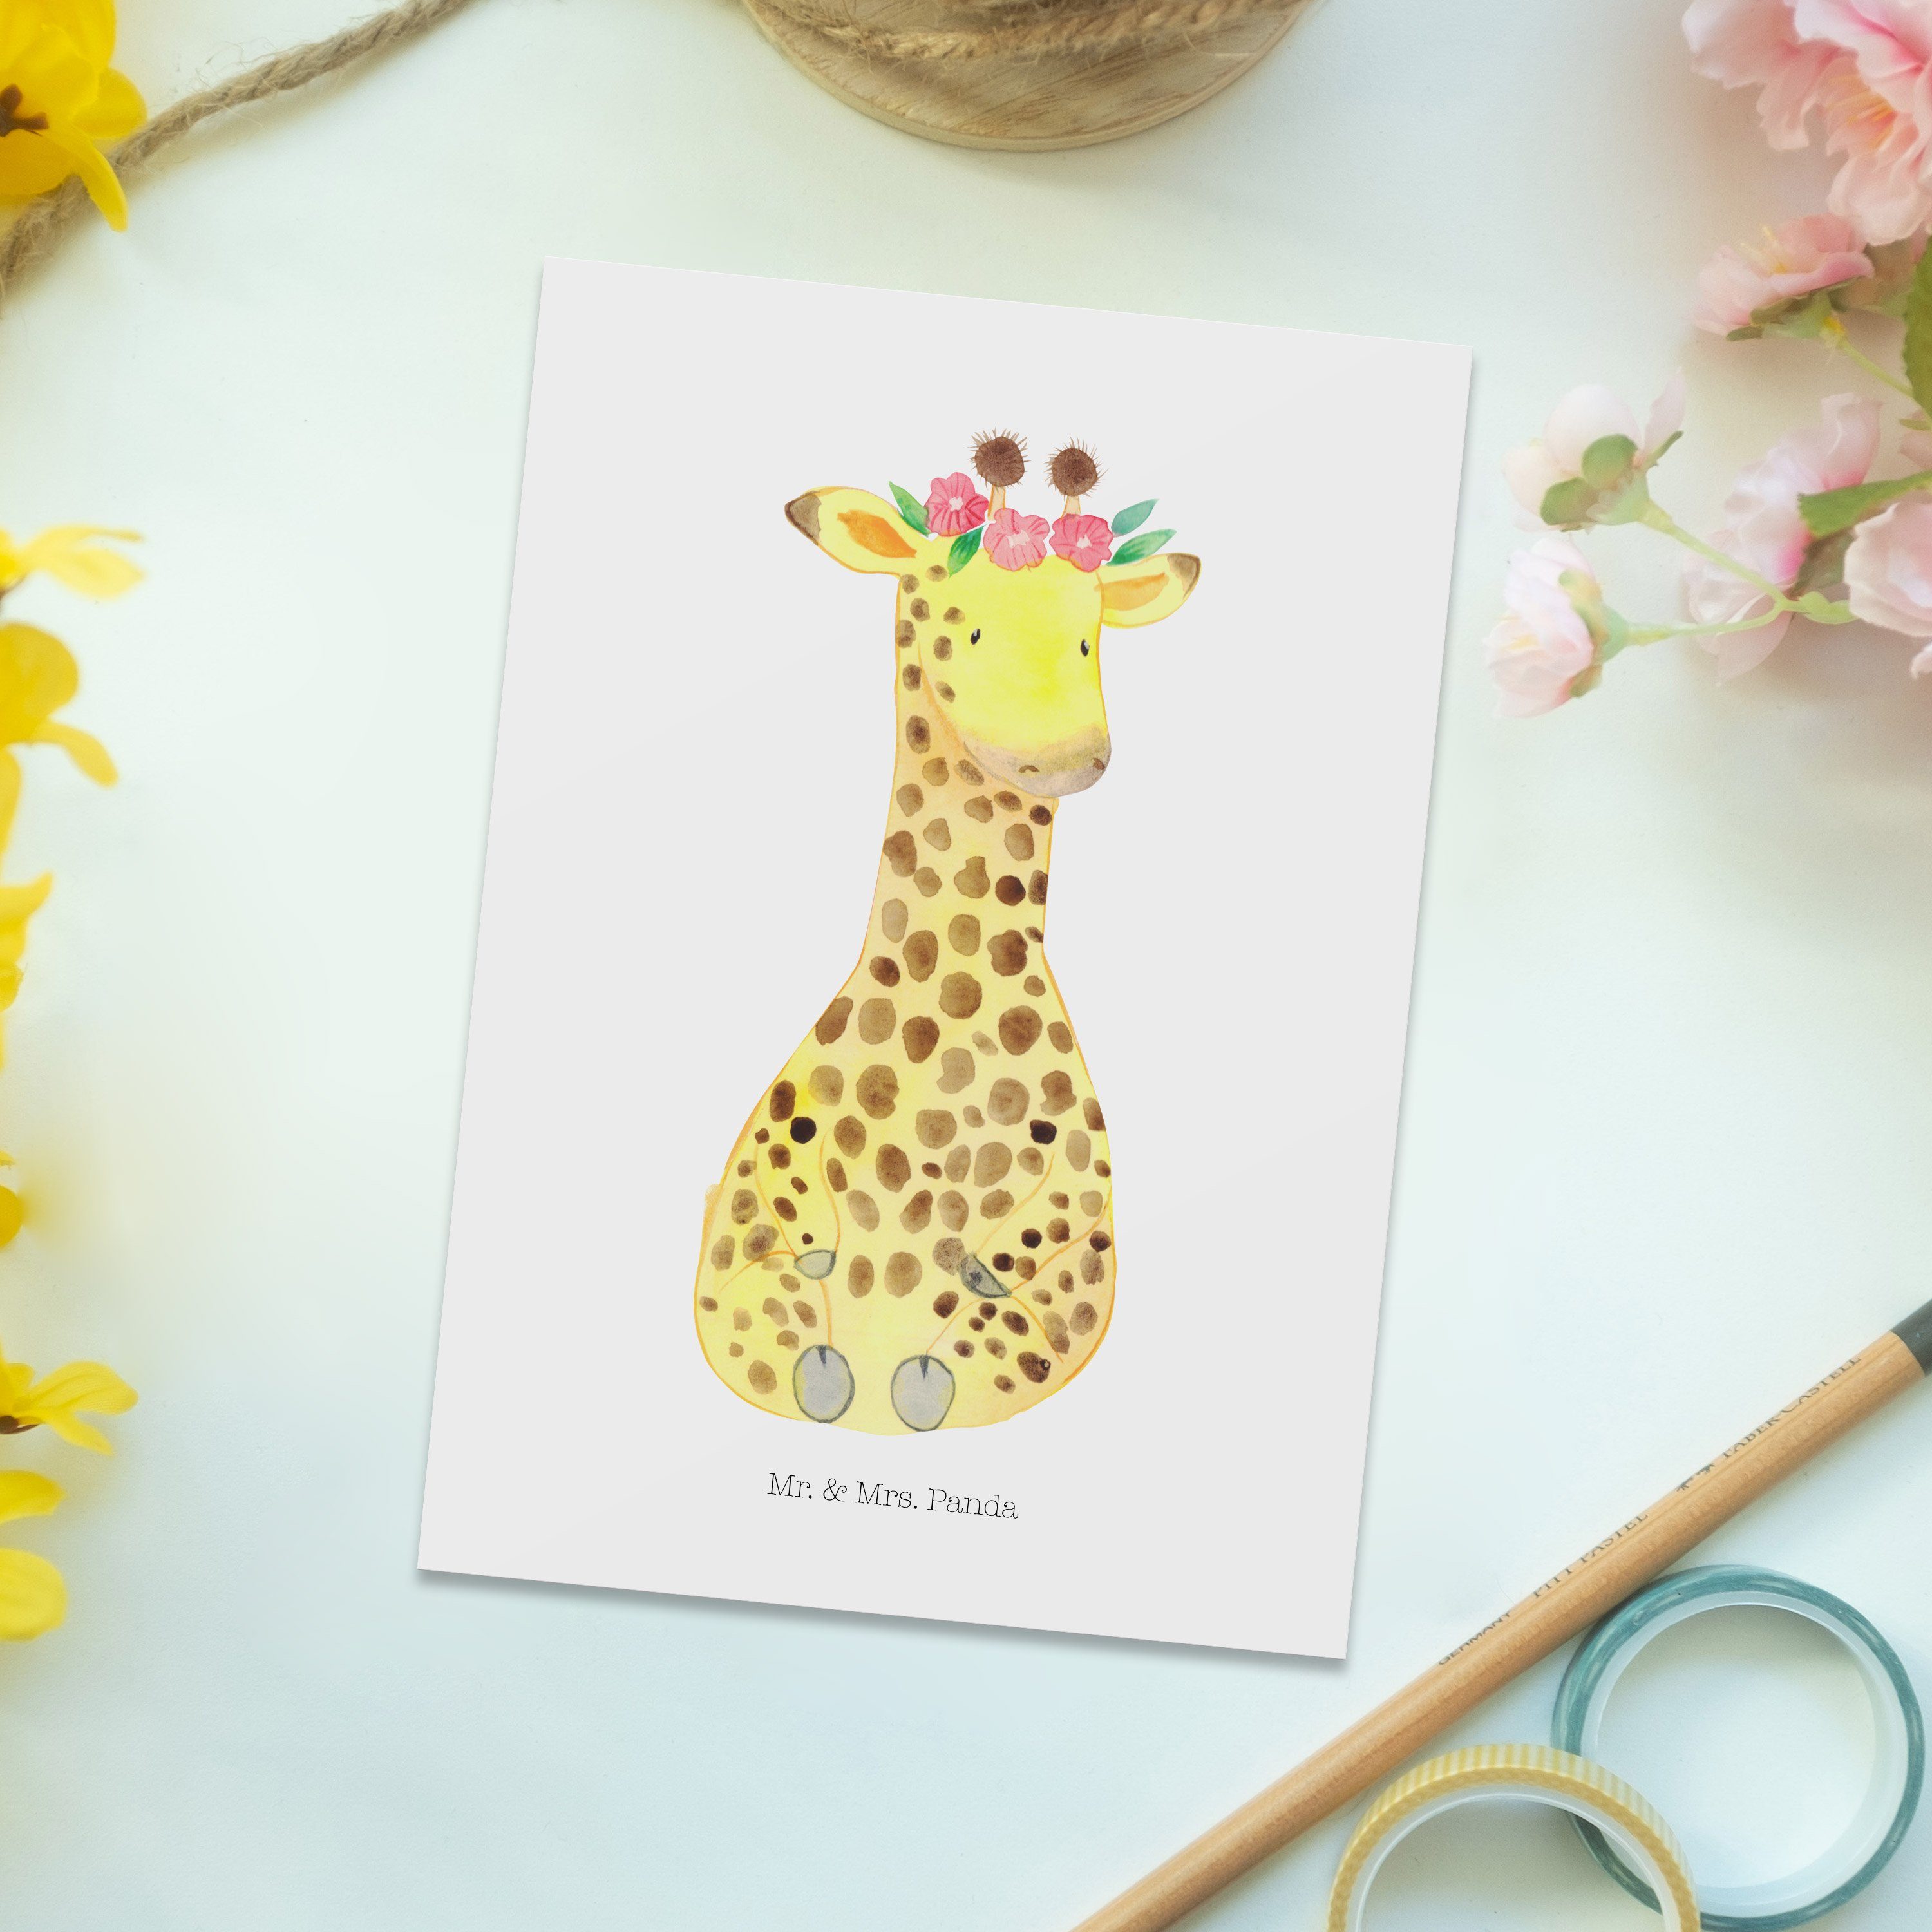 Mr. & Mrs. Panda - Geschenkkarte, Giraffe - Geschenk, Abent Postkarte Weiß Blumenkranz Freundin